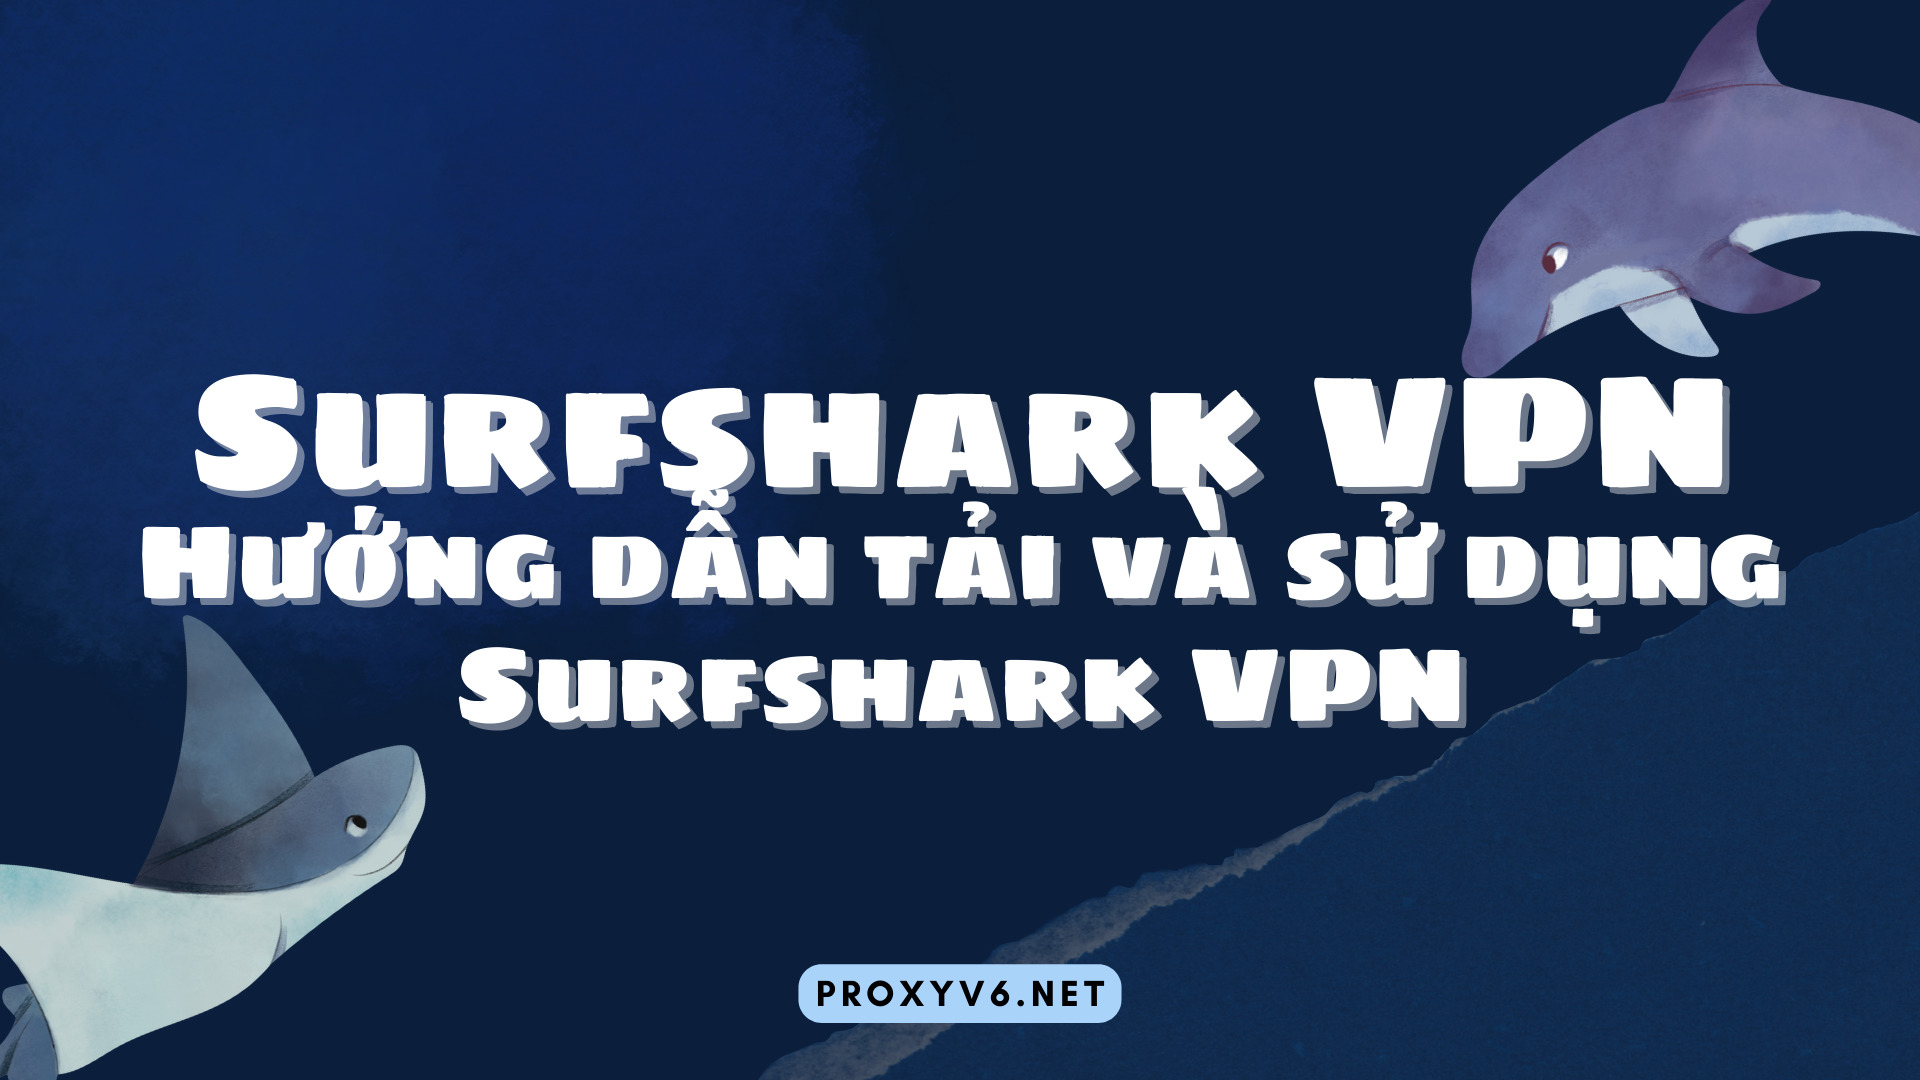 Surfshark VPN – Hướng dẫn và sử dụng Surfshark VPN